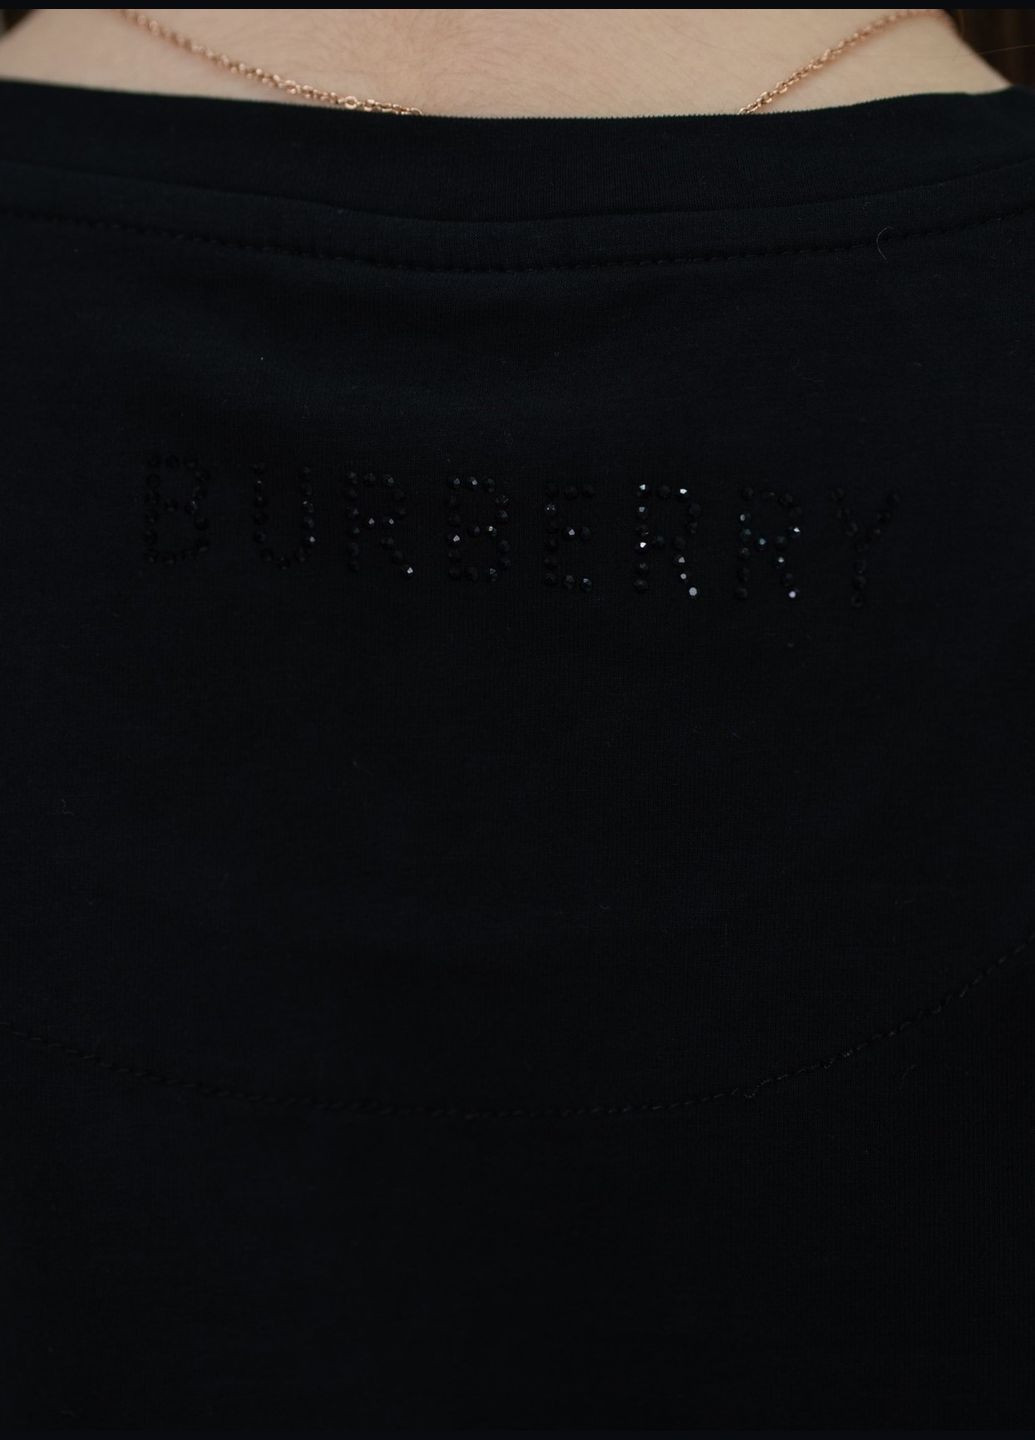 Черная летняя футболка женская Burberry